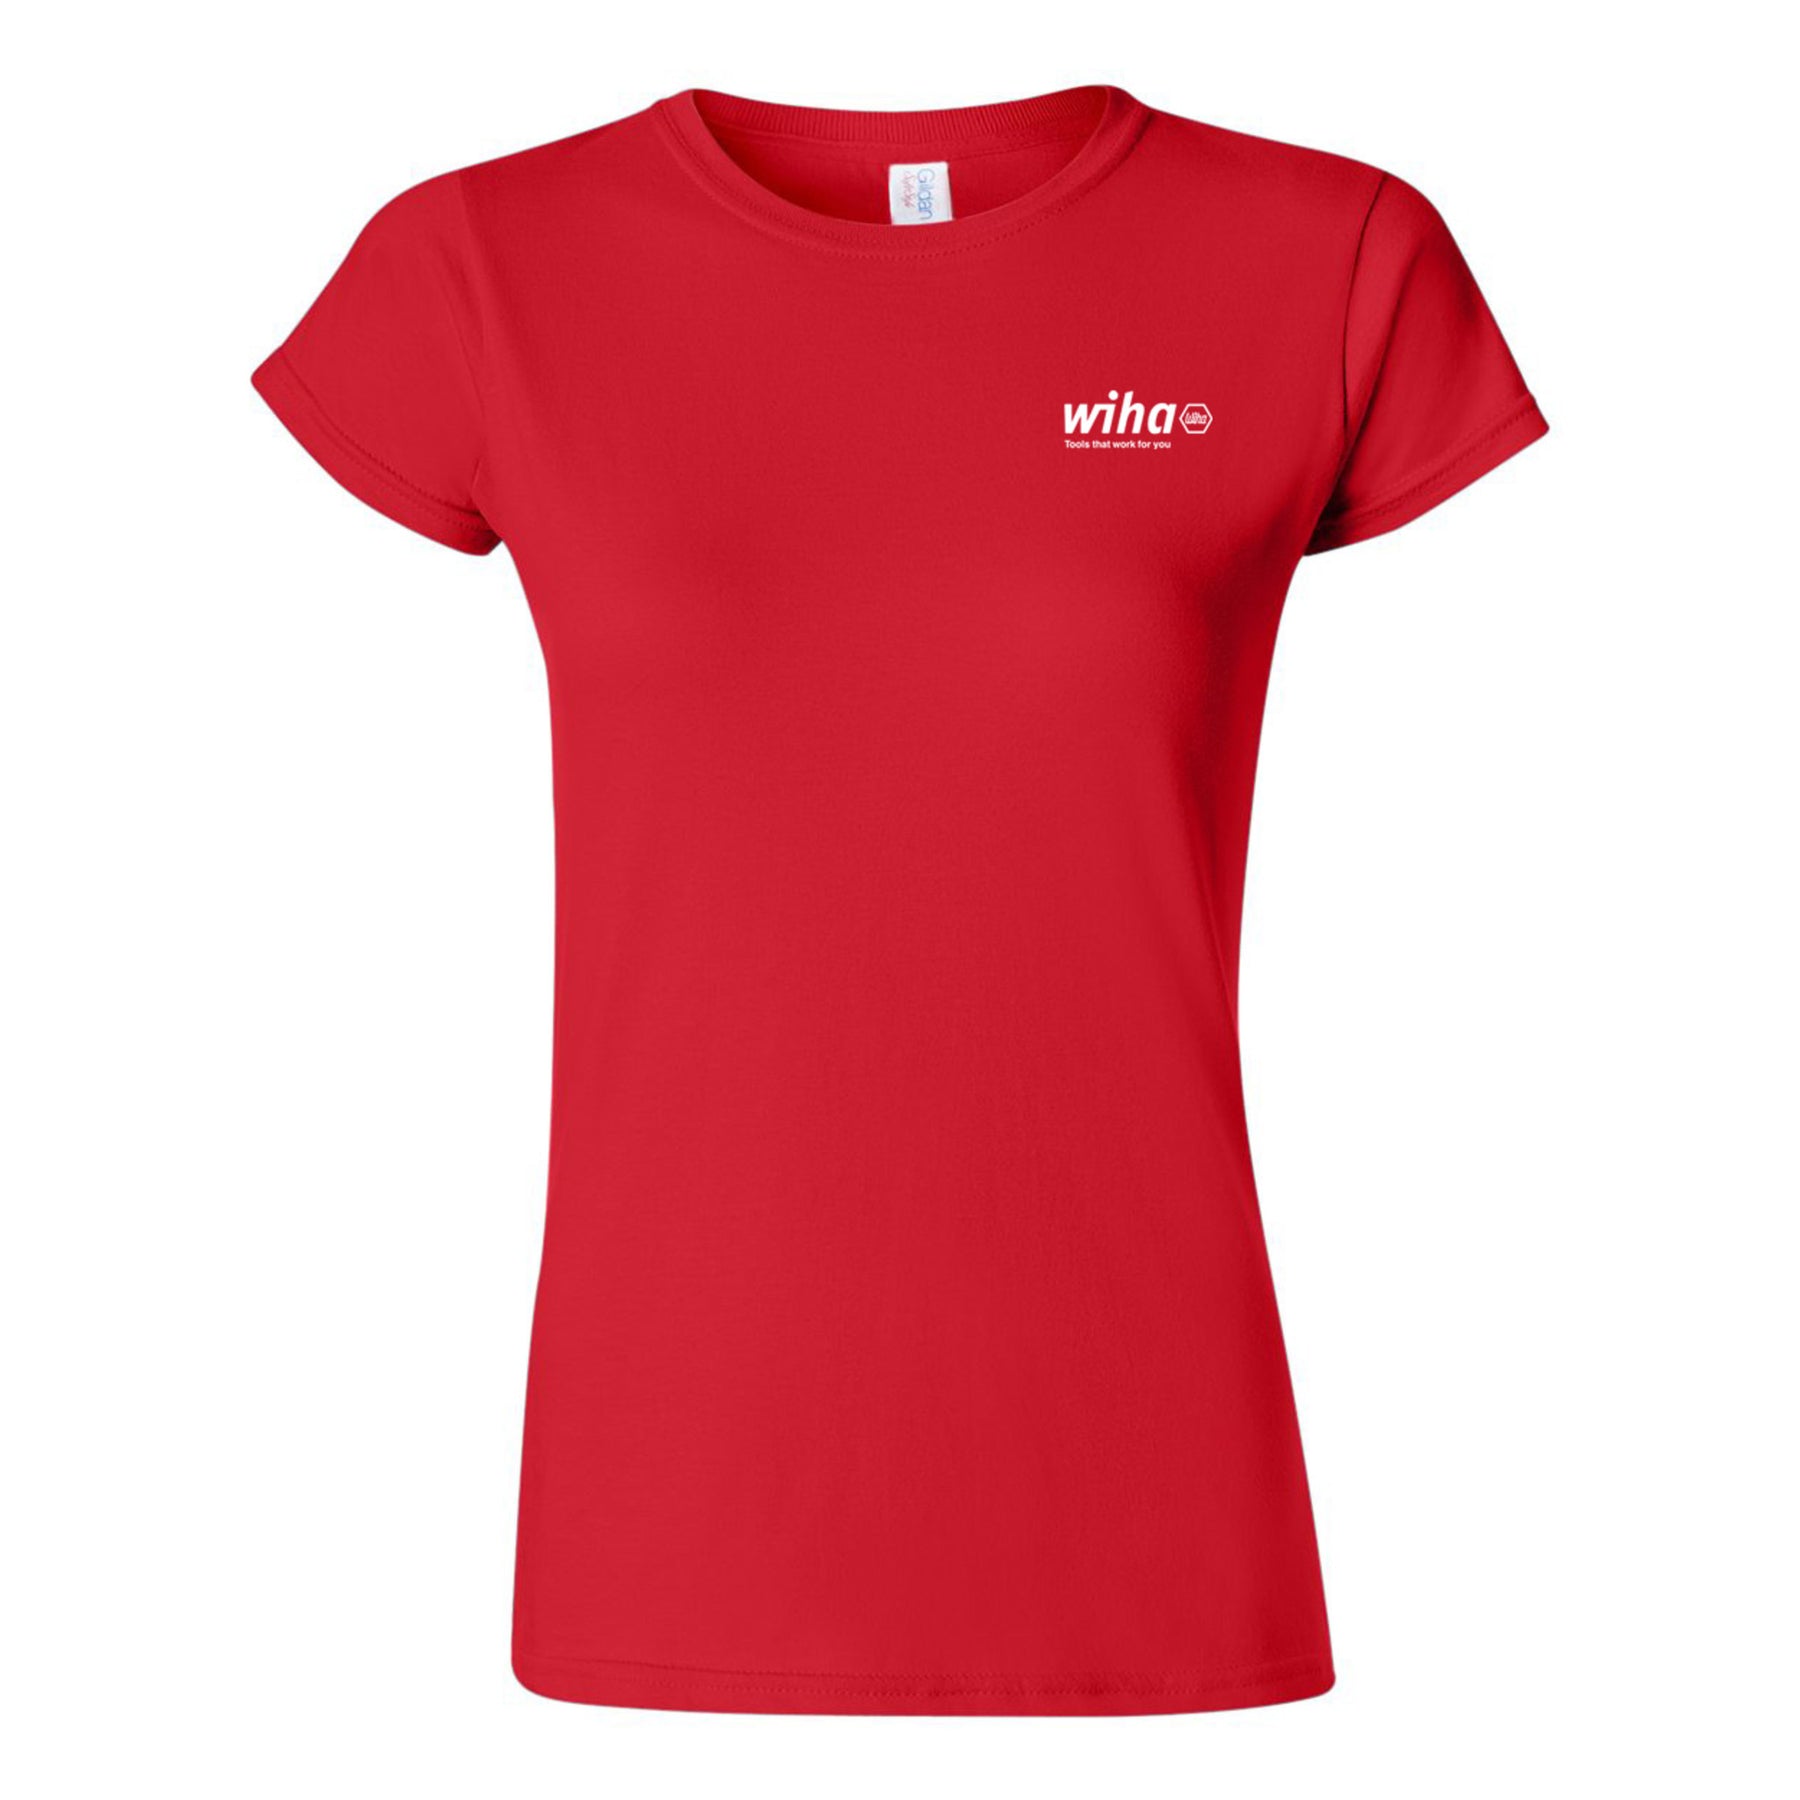 Wiha 91624 Wiha Women's T-shirt Red XXL